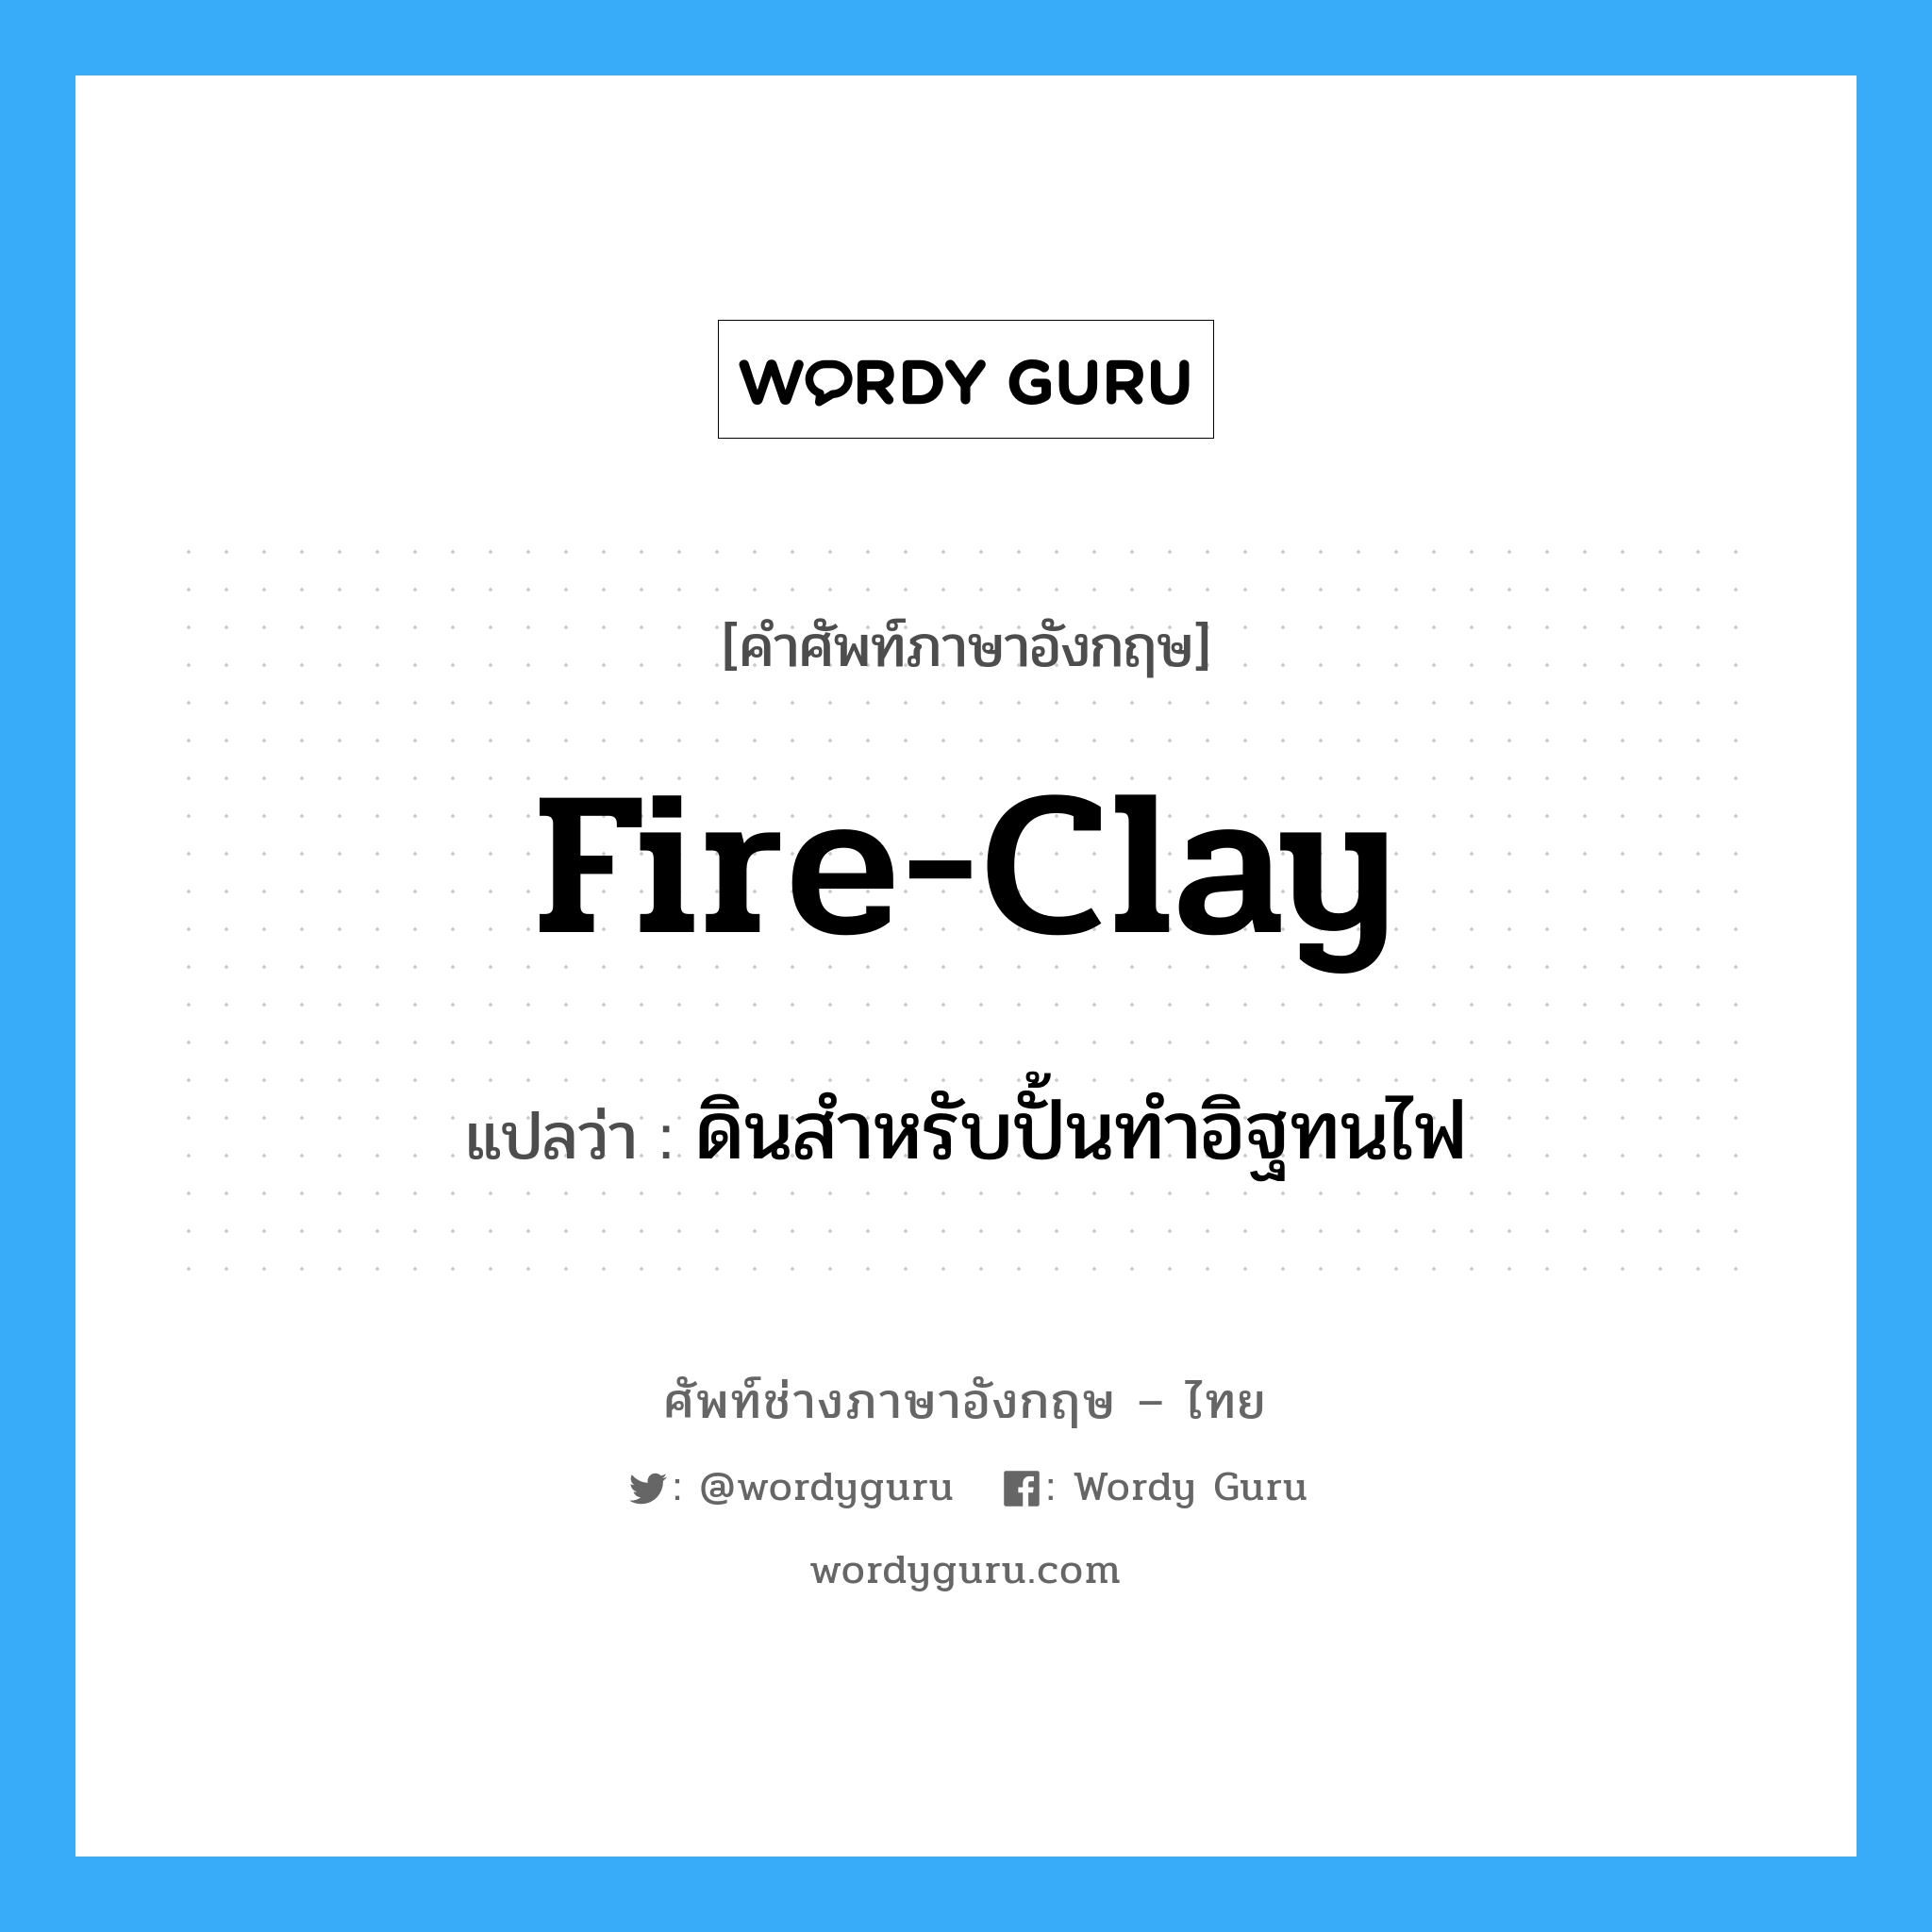 ดินสำหรับปั้นทำอิฐทนไฟ ภาษาอังกฤษ?, คำศัพท์ช่างภาษาอังกฤษ - ไทย ดินสำหรับปั้นทำอิฐทนไฟ คำศัพท์ภาษาอังกฤษ ดินสำหรับปั้นทำอิฐทนไฟ แปลว่า fire-clay